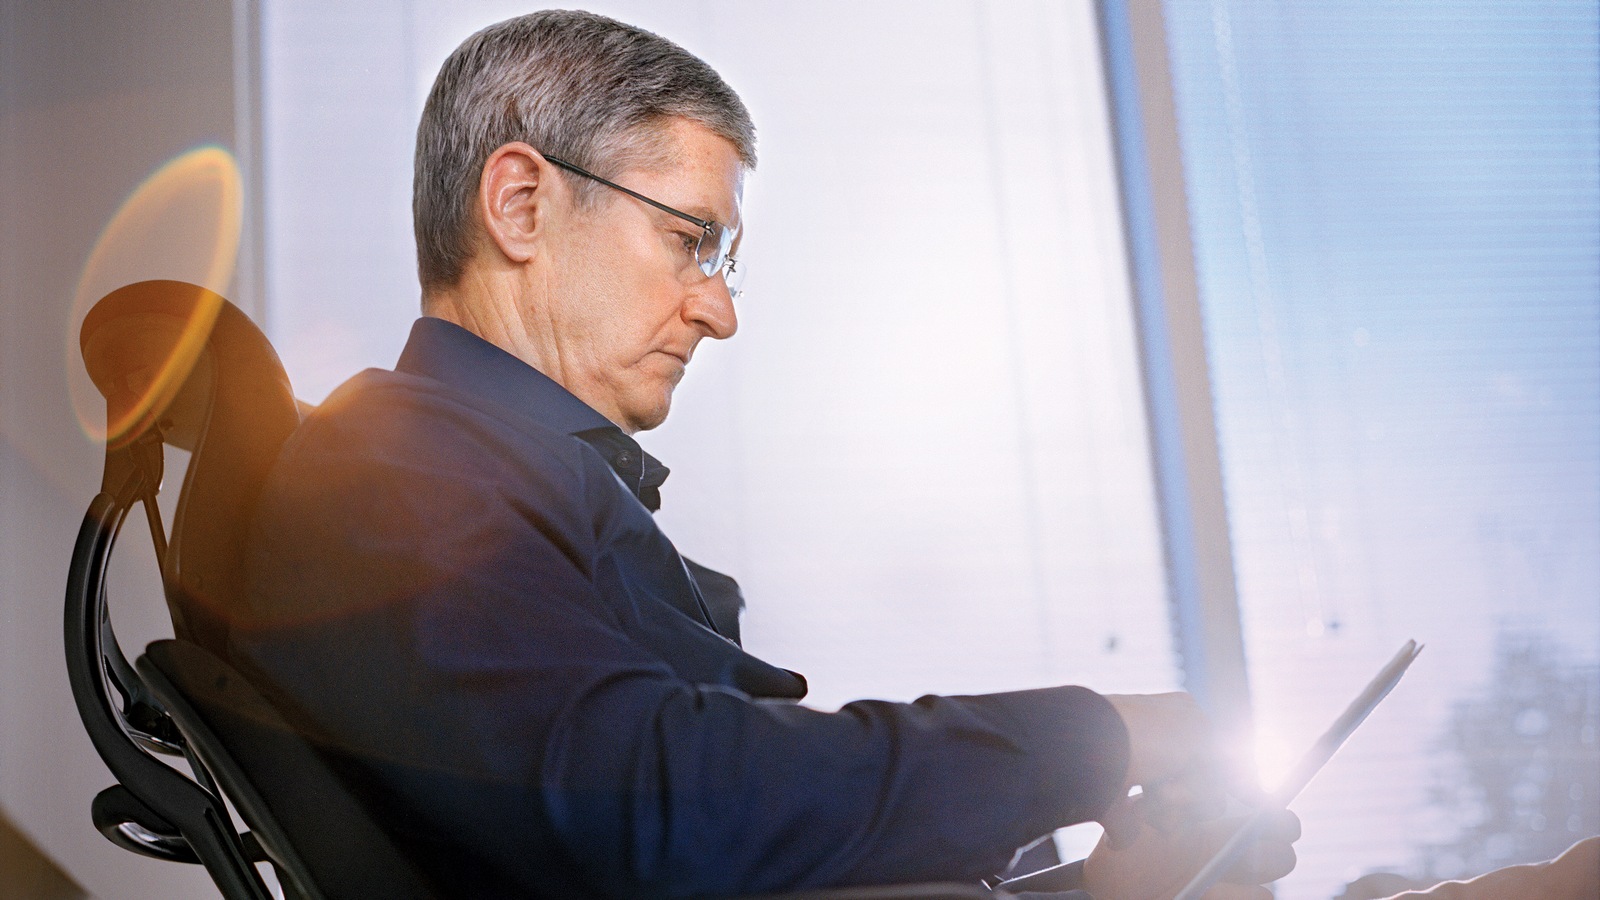 Тим Кук: факты из жизни нынешнего CEO Apple Inc.